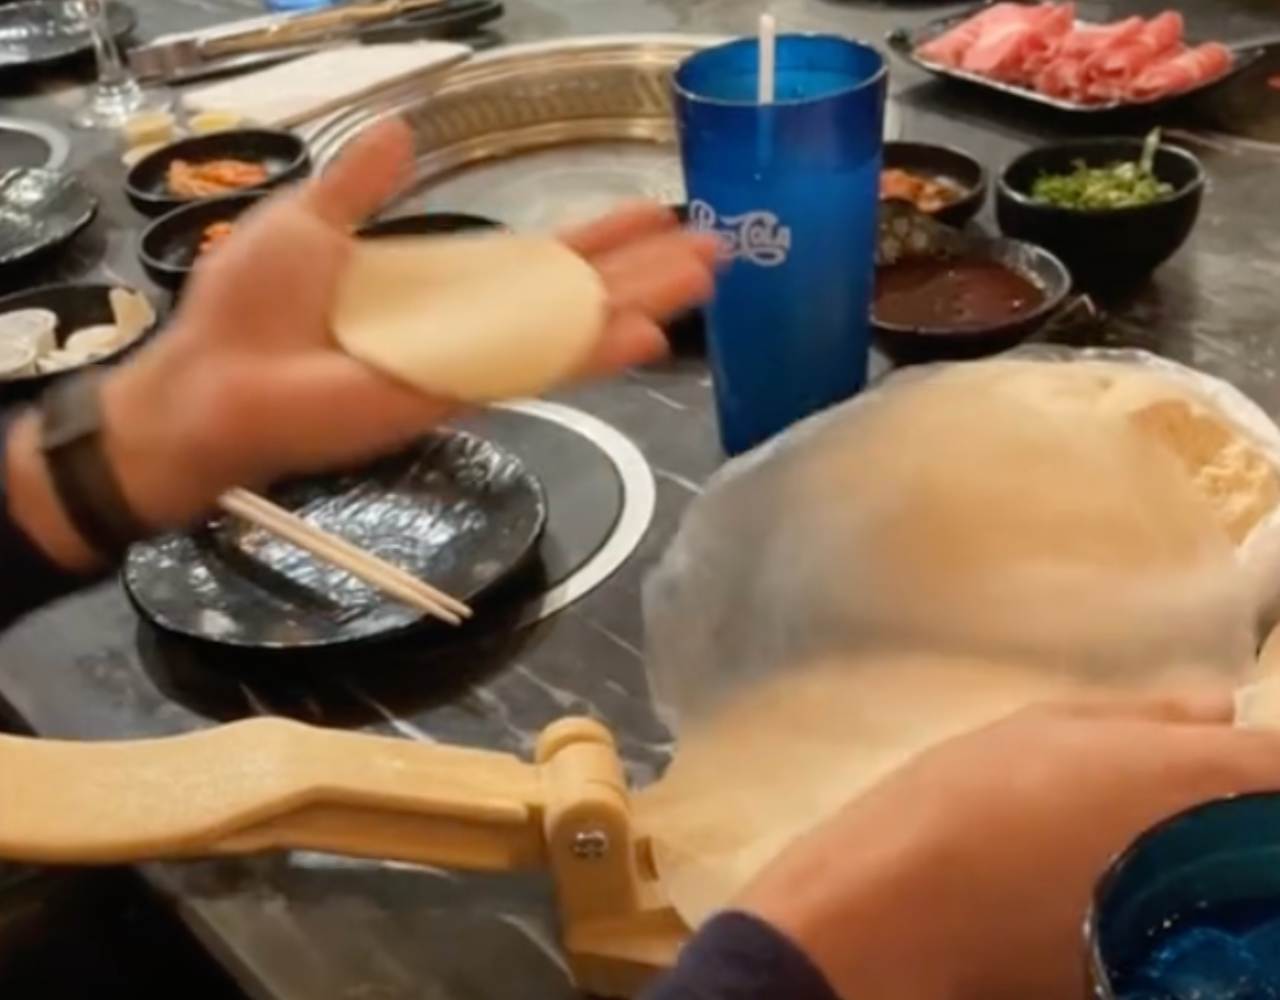 Porque nunca puede faltar: Mexicanos llevan maquina para hacer tortillas a restaurante coreano